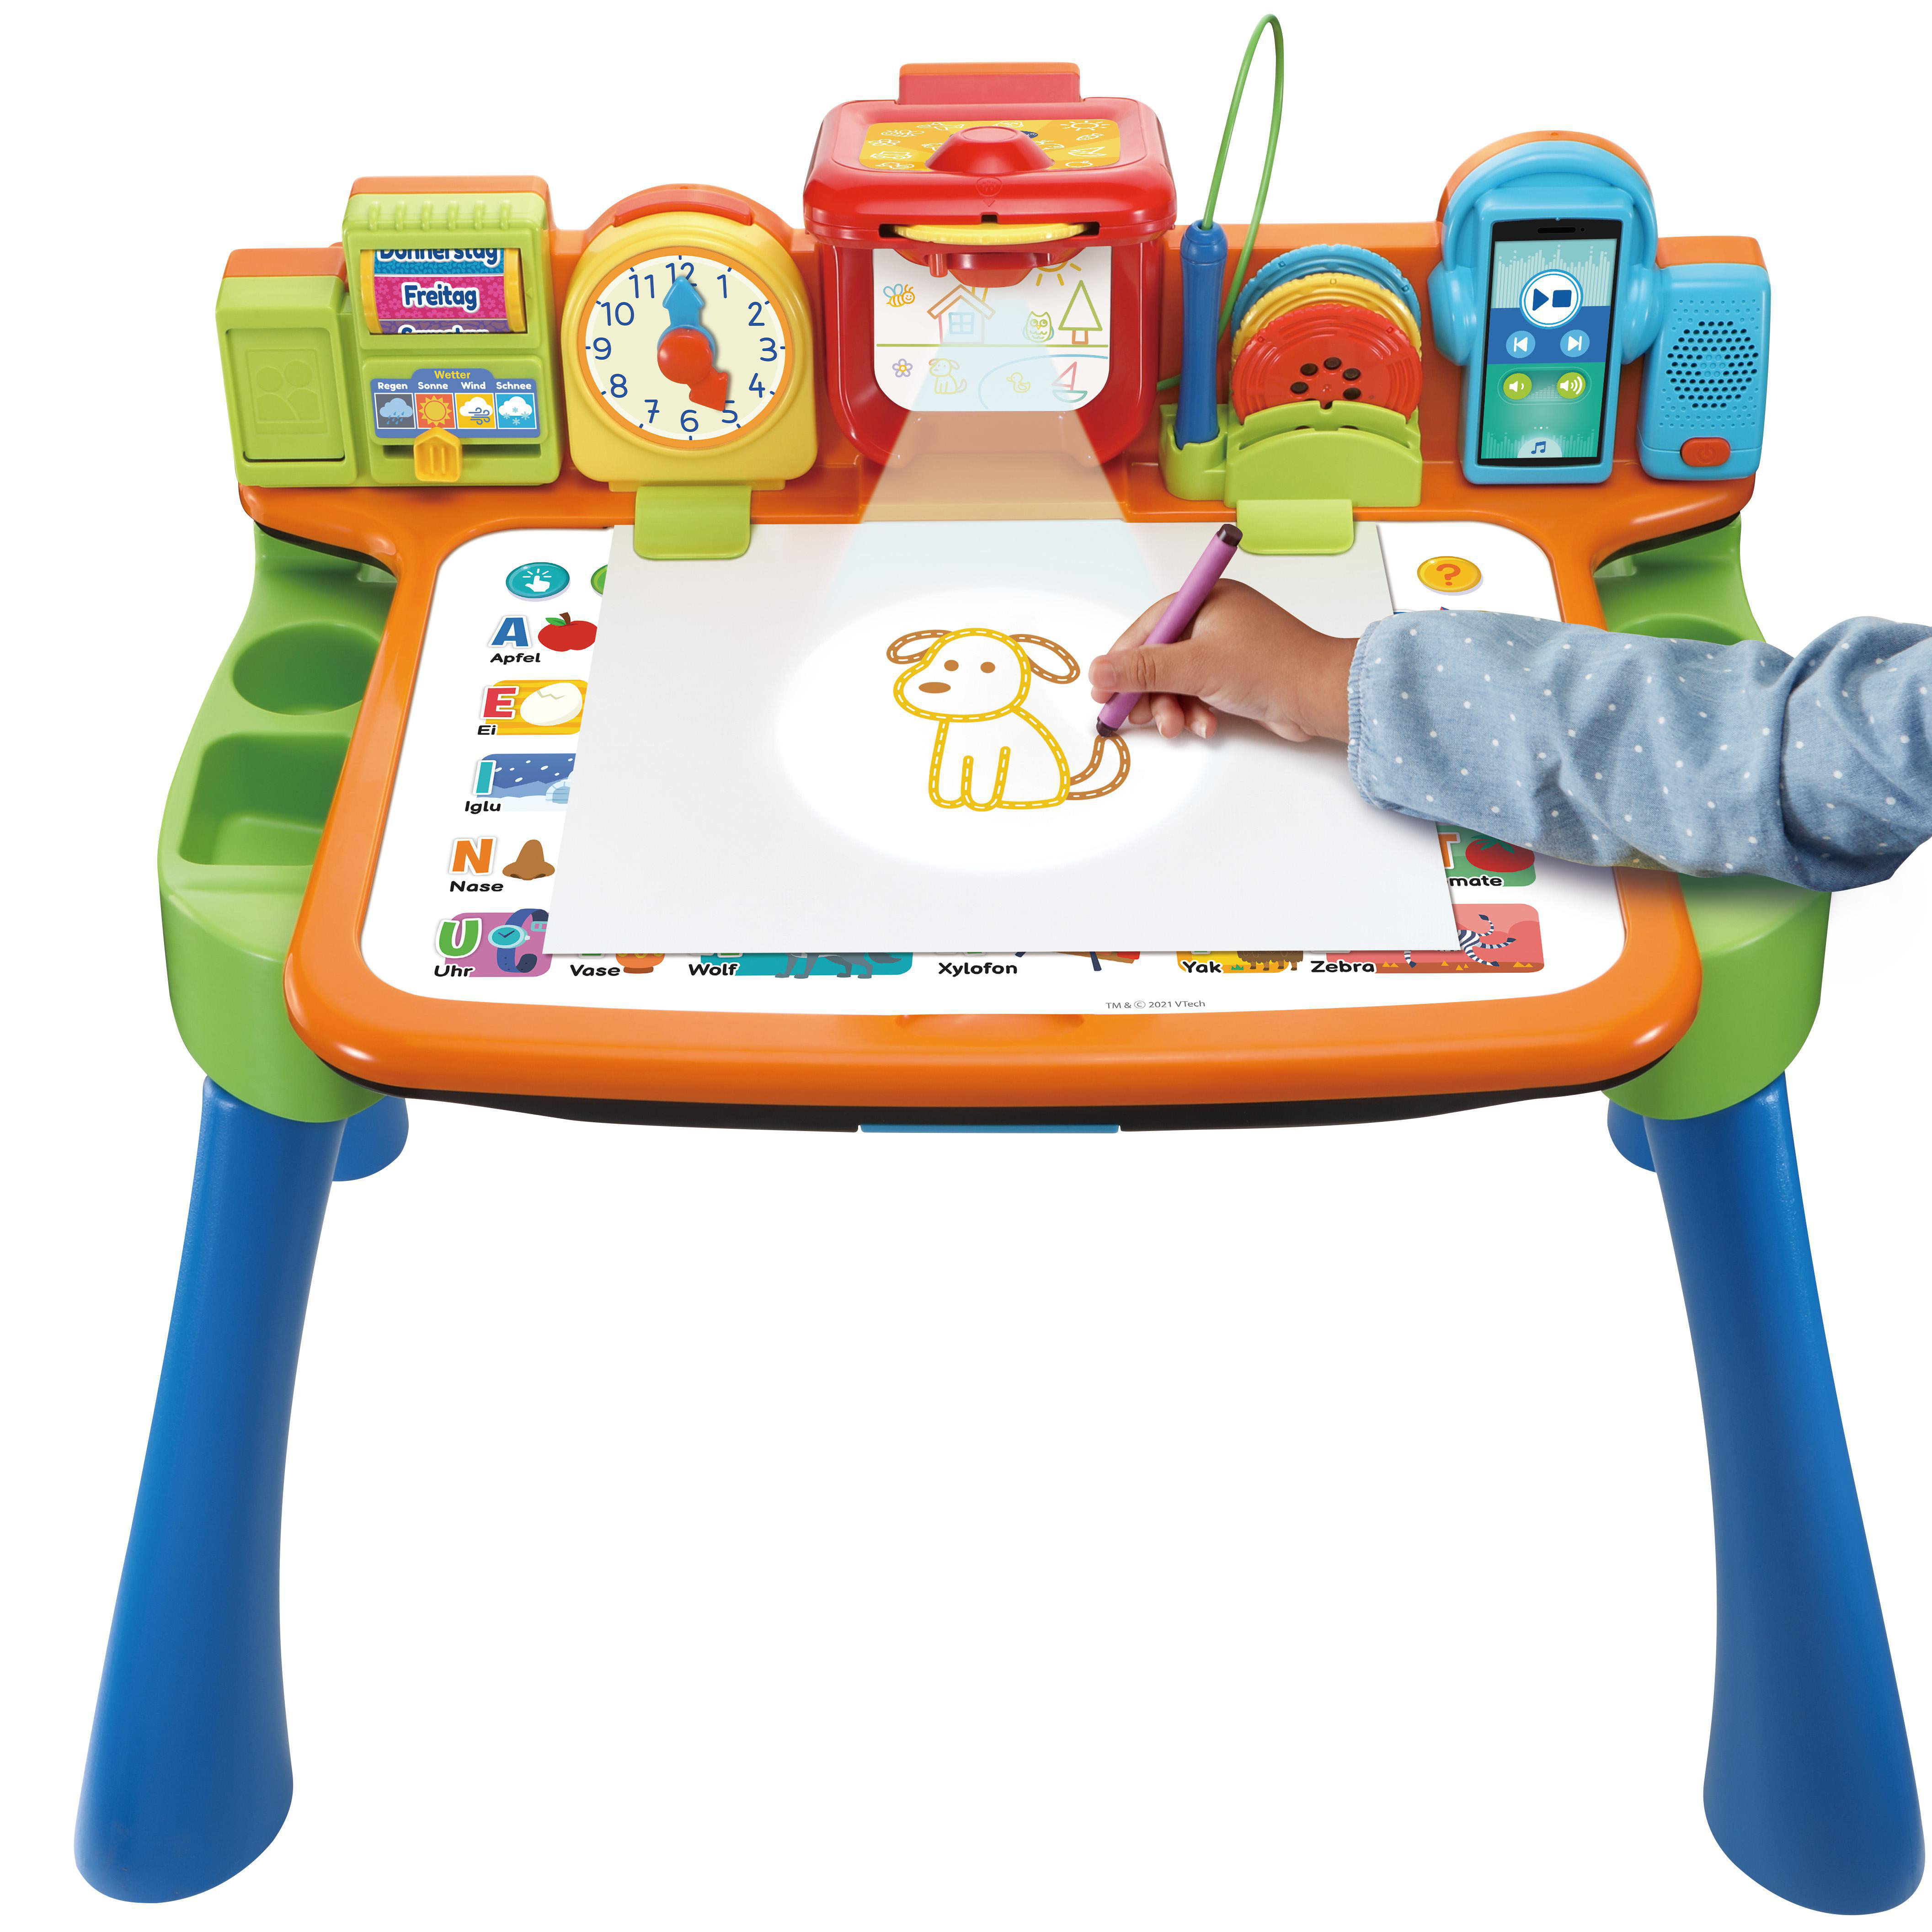 VTECH 5-in-1 Magischer Spielzeugtisch, Mehrfarbig Schreibtisch